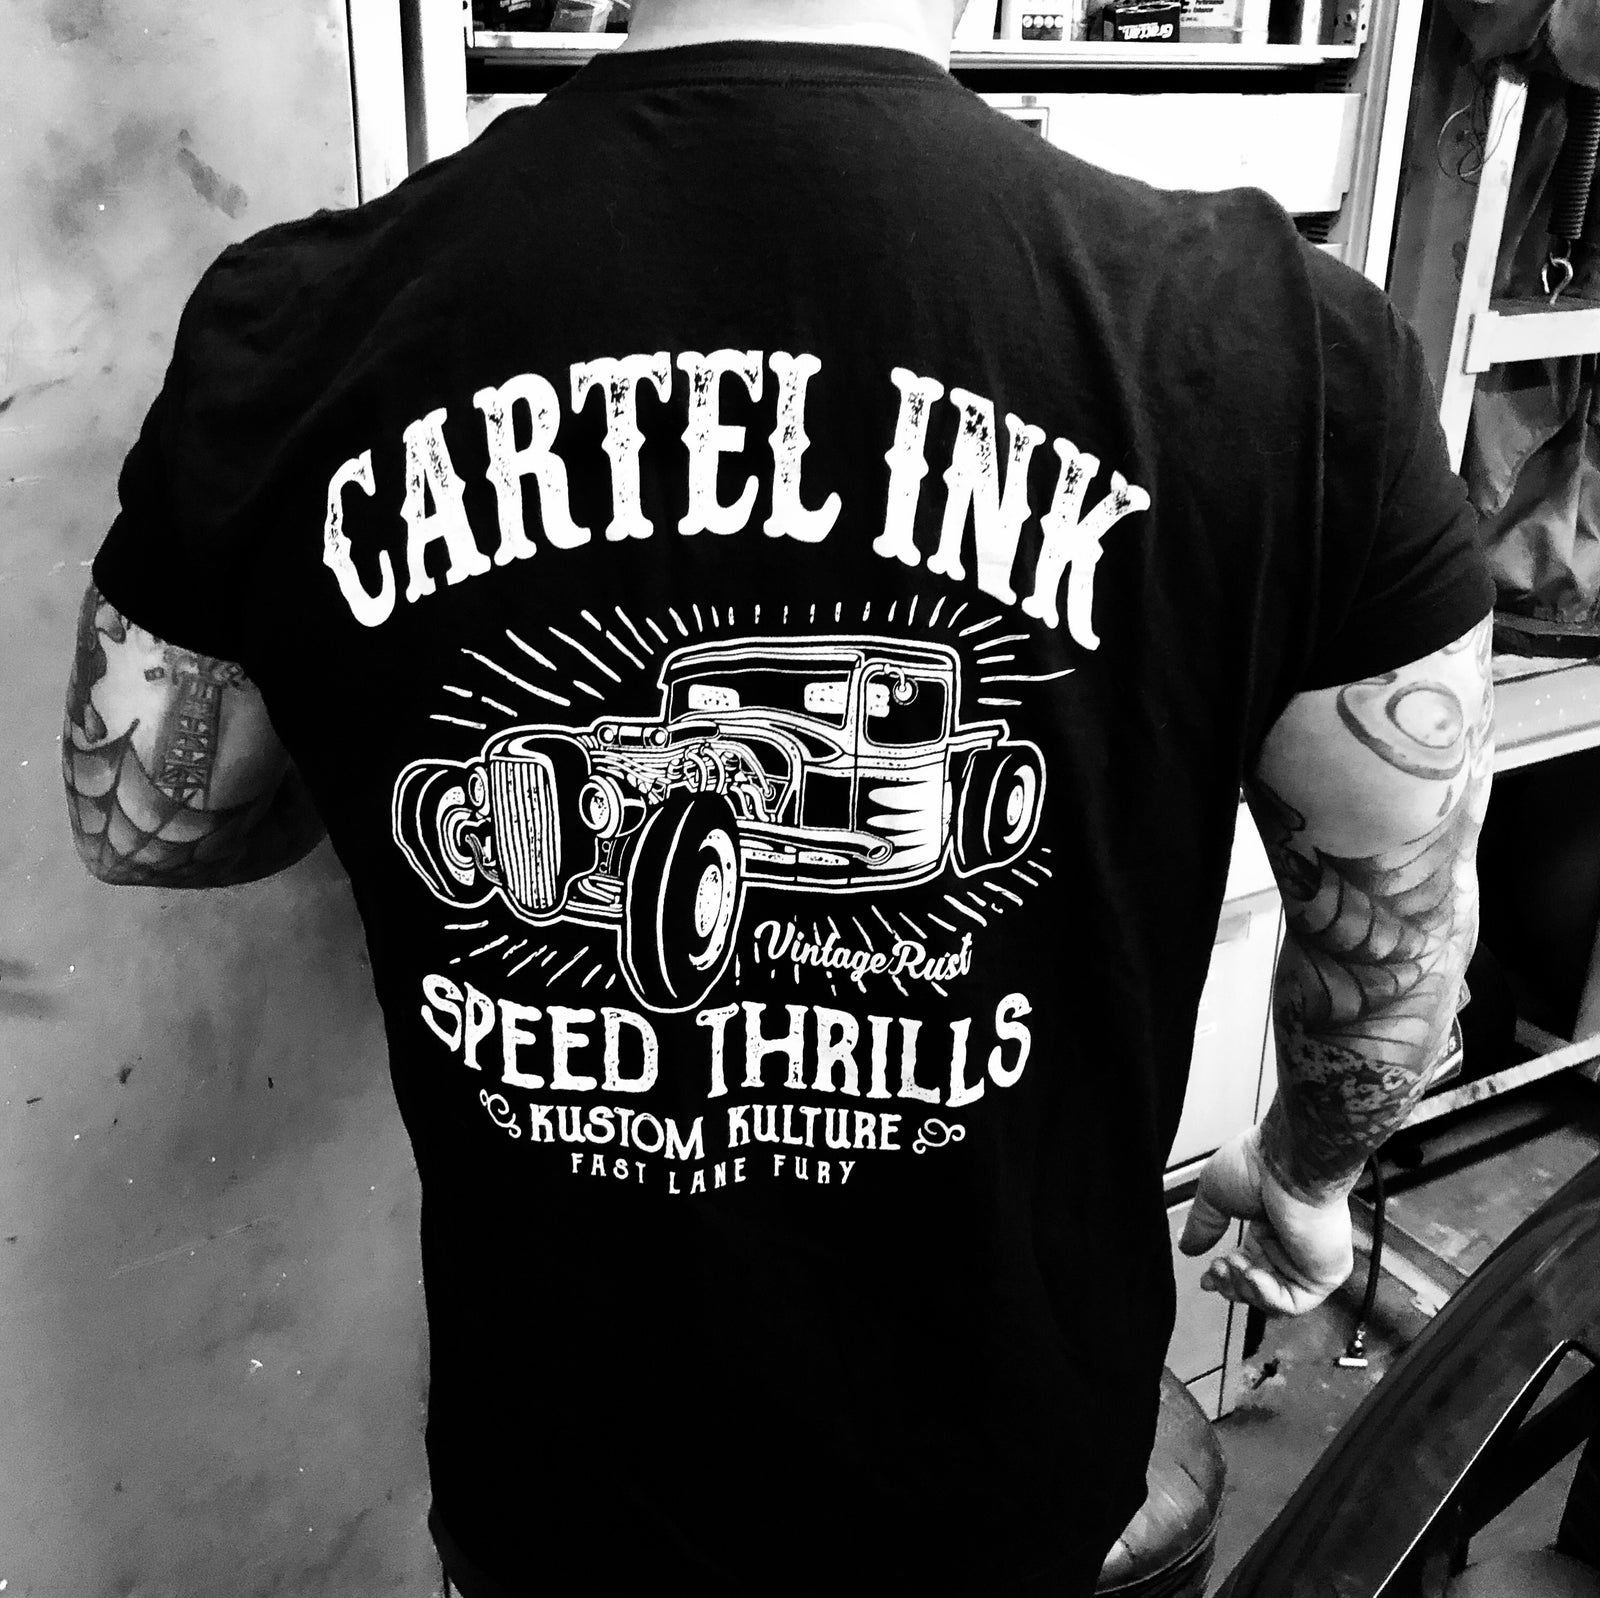 Speed Thrills Men's T-Shirt